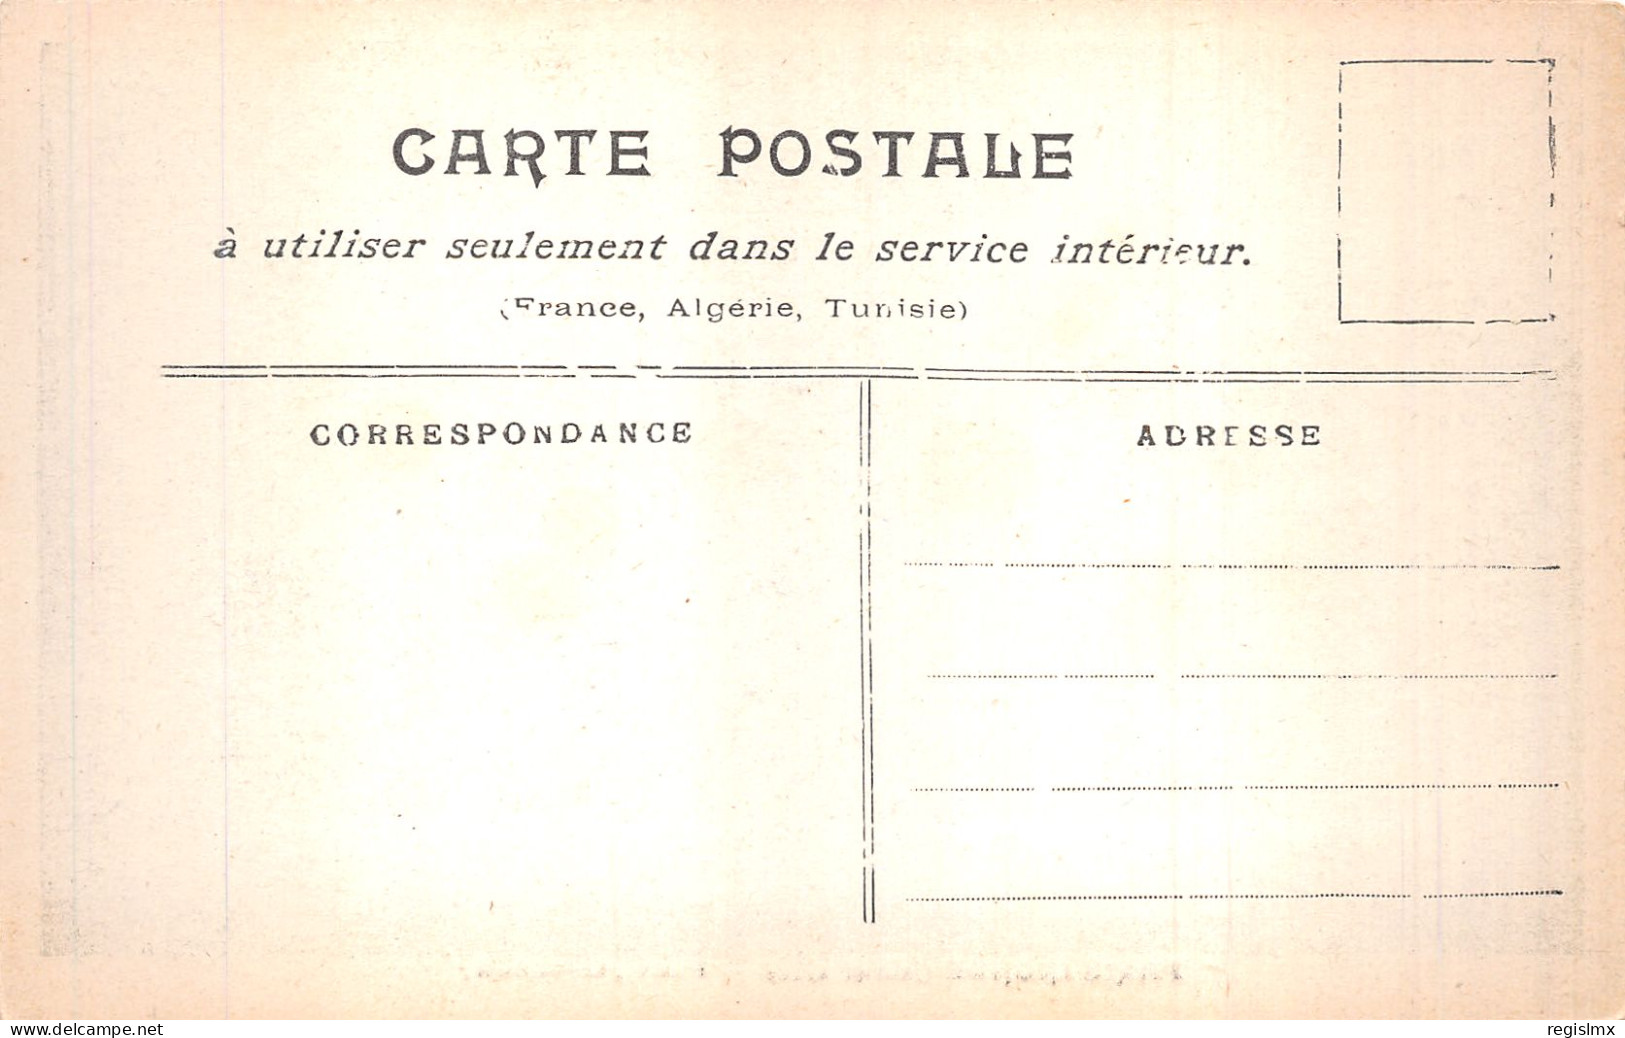 75-PARIS INONDE PONT MIRABEAU-N°T2253-C/0095 - Paris Flood, 1910